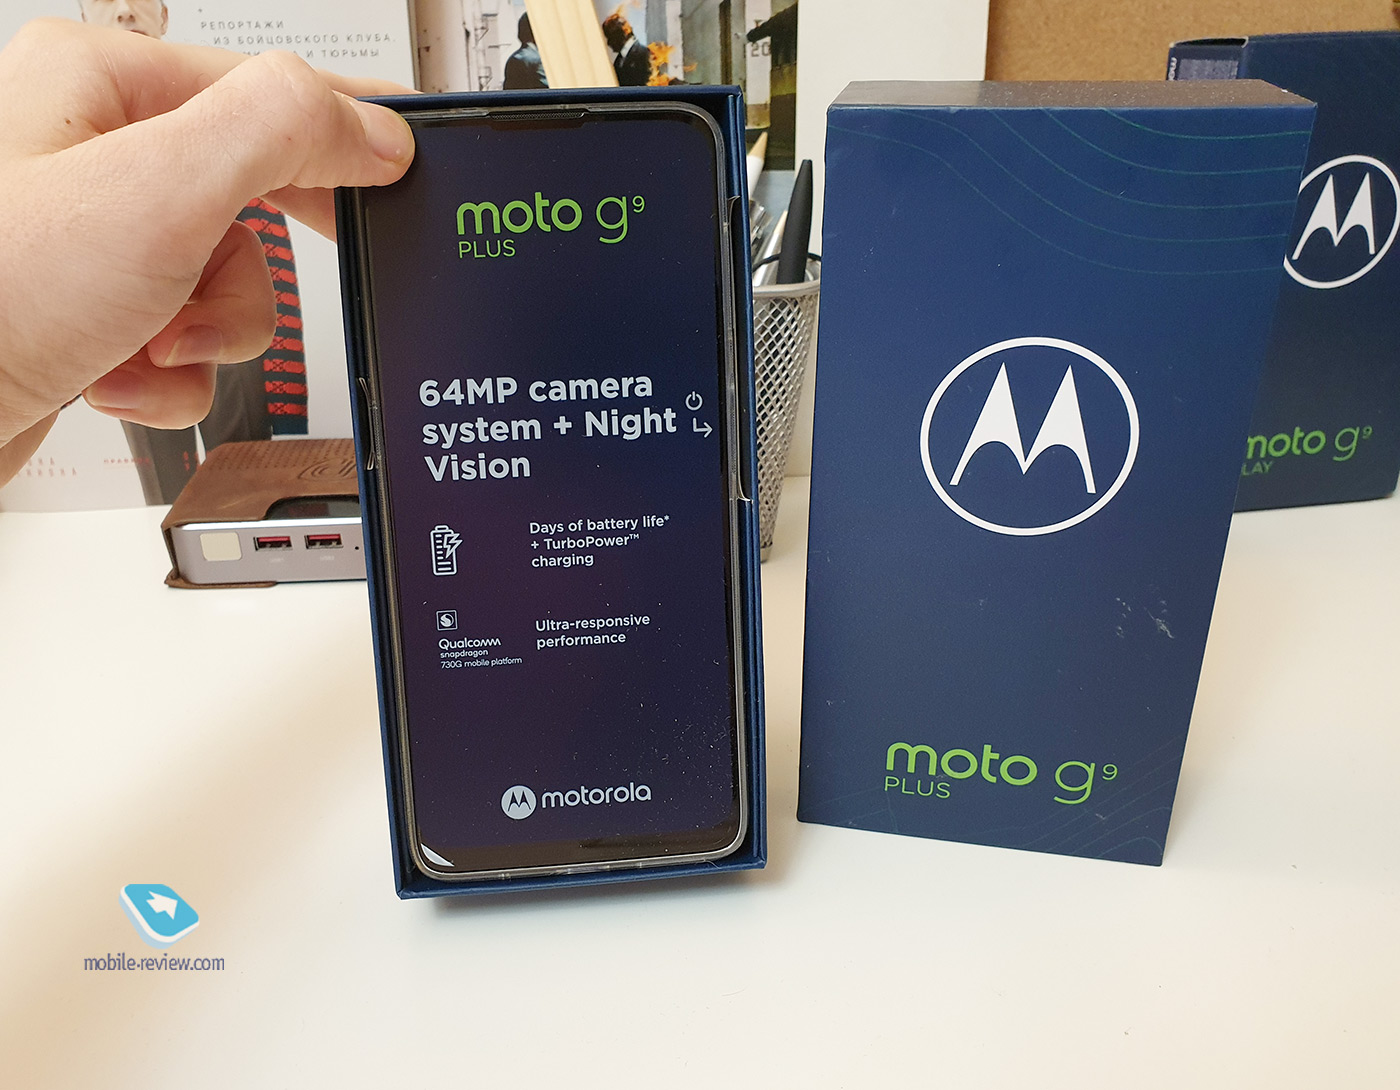  Motorola G9 Plus